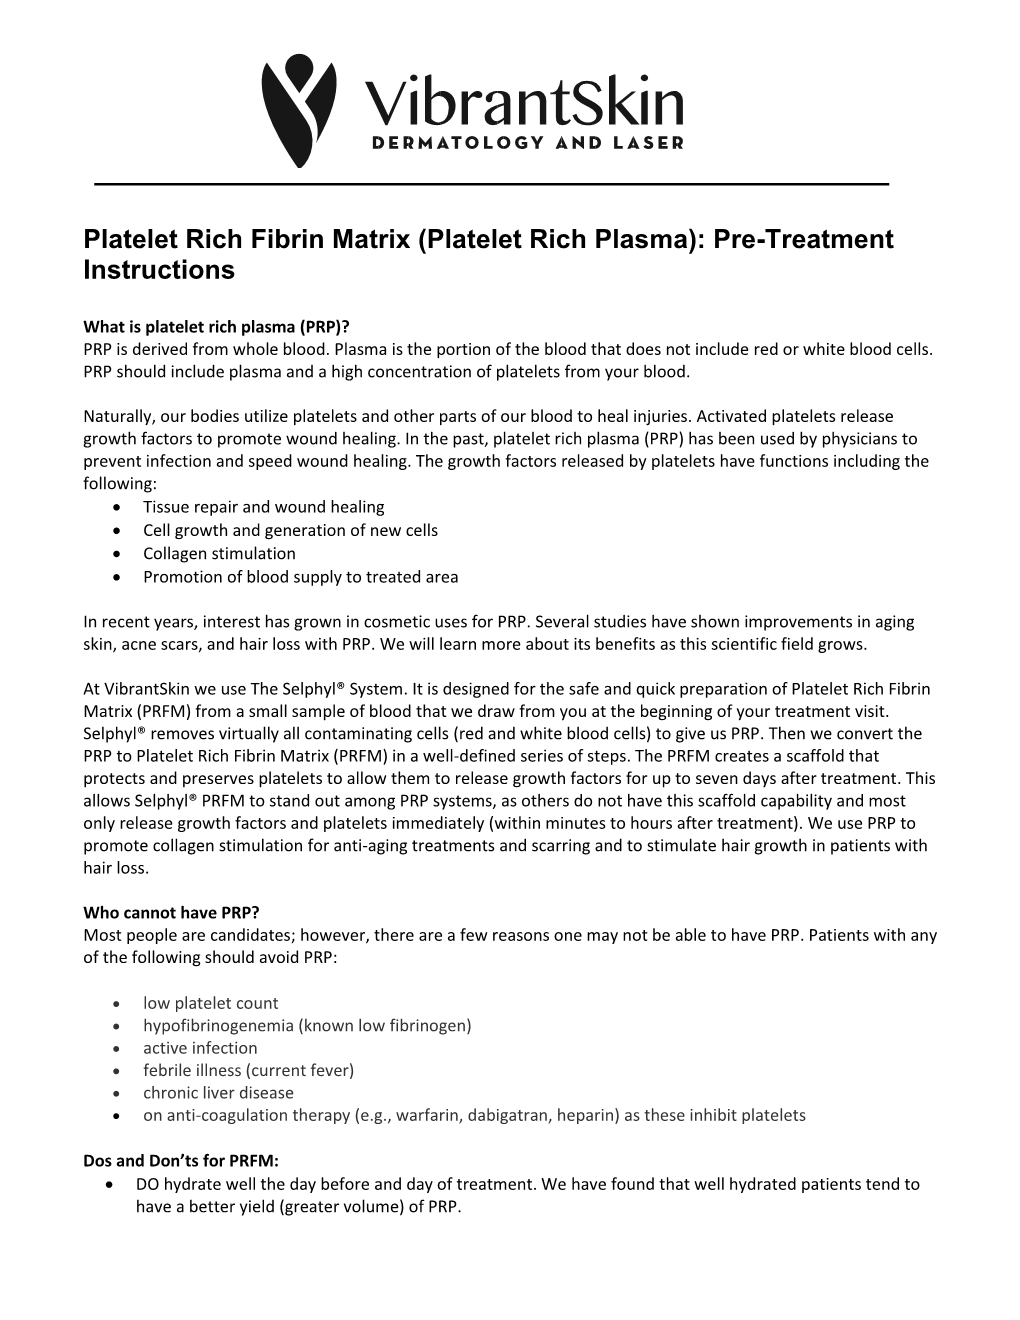 Platelet Rich Fibrin Matrix (Platelet Rich Plasma): Pre-Treatment Instructions